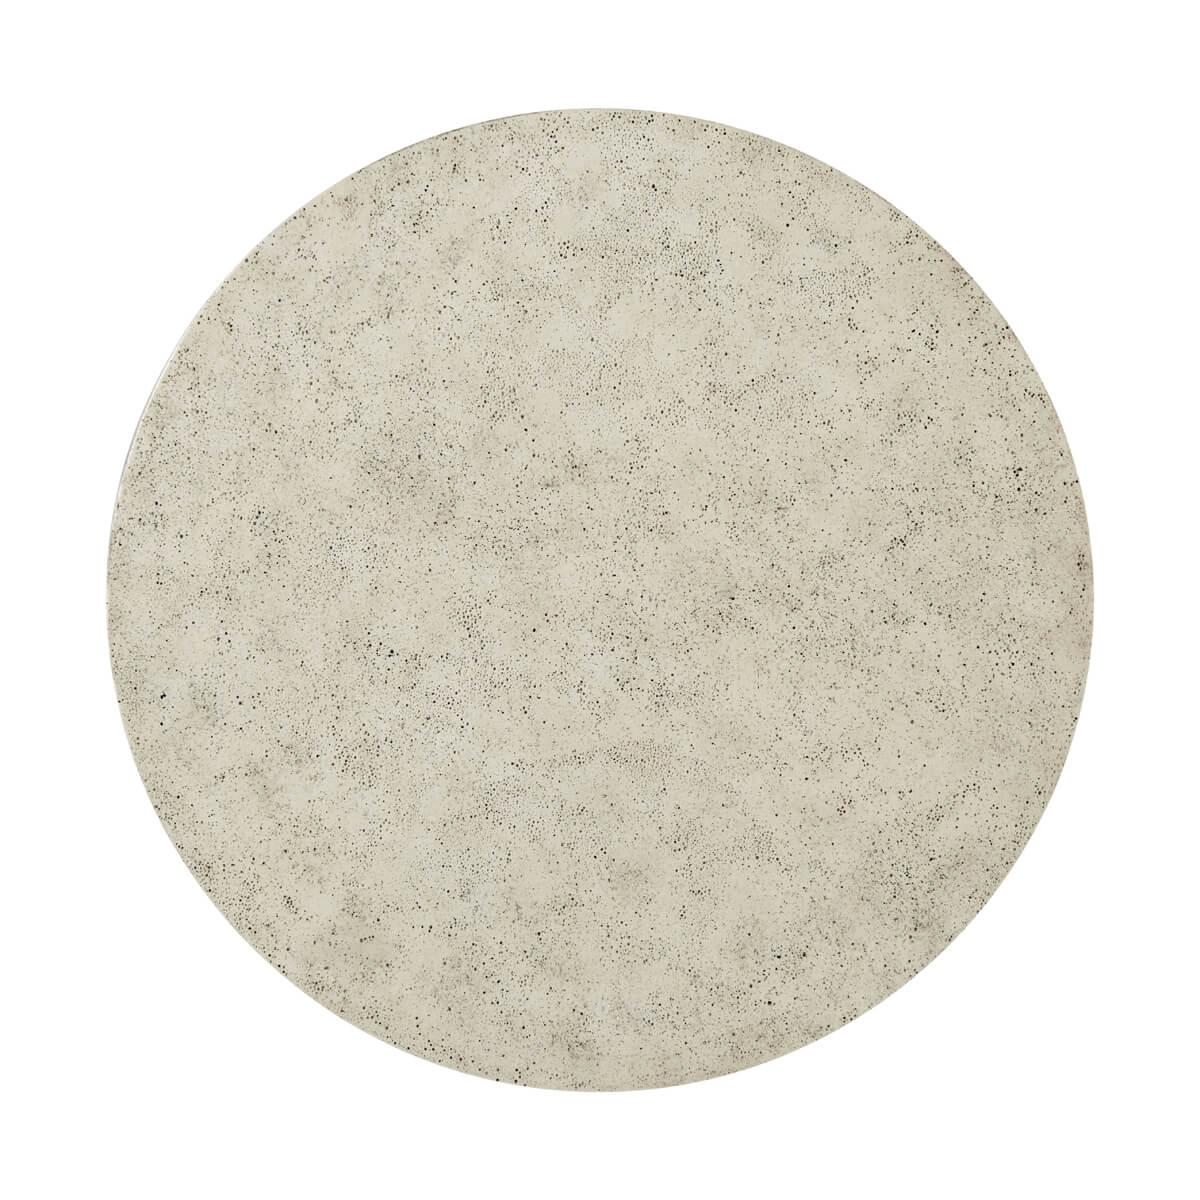 Moderner Beistelltisch aus gemaserter Esche in unserem Dark Earth-Finish mit einer Platte in unserem steinähnlichen, porösen Mineral-Finish.

Abmessungen: 21,75